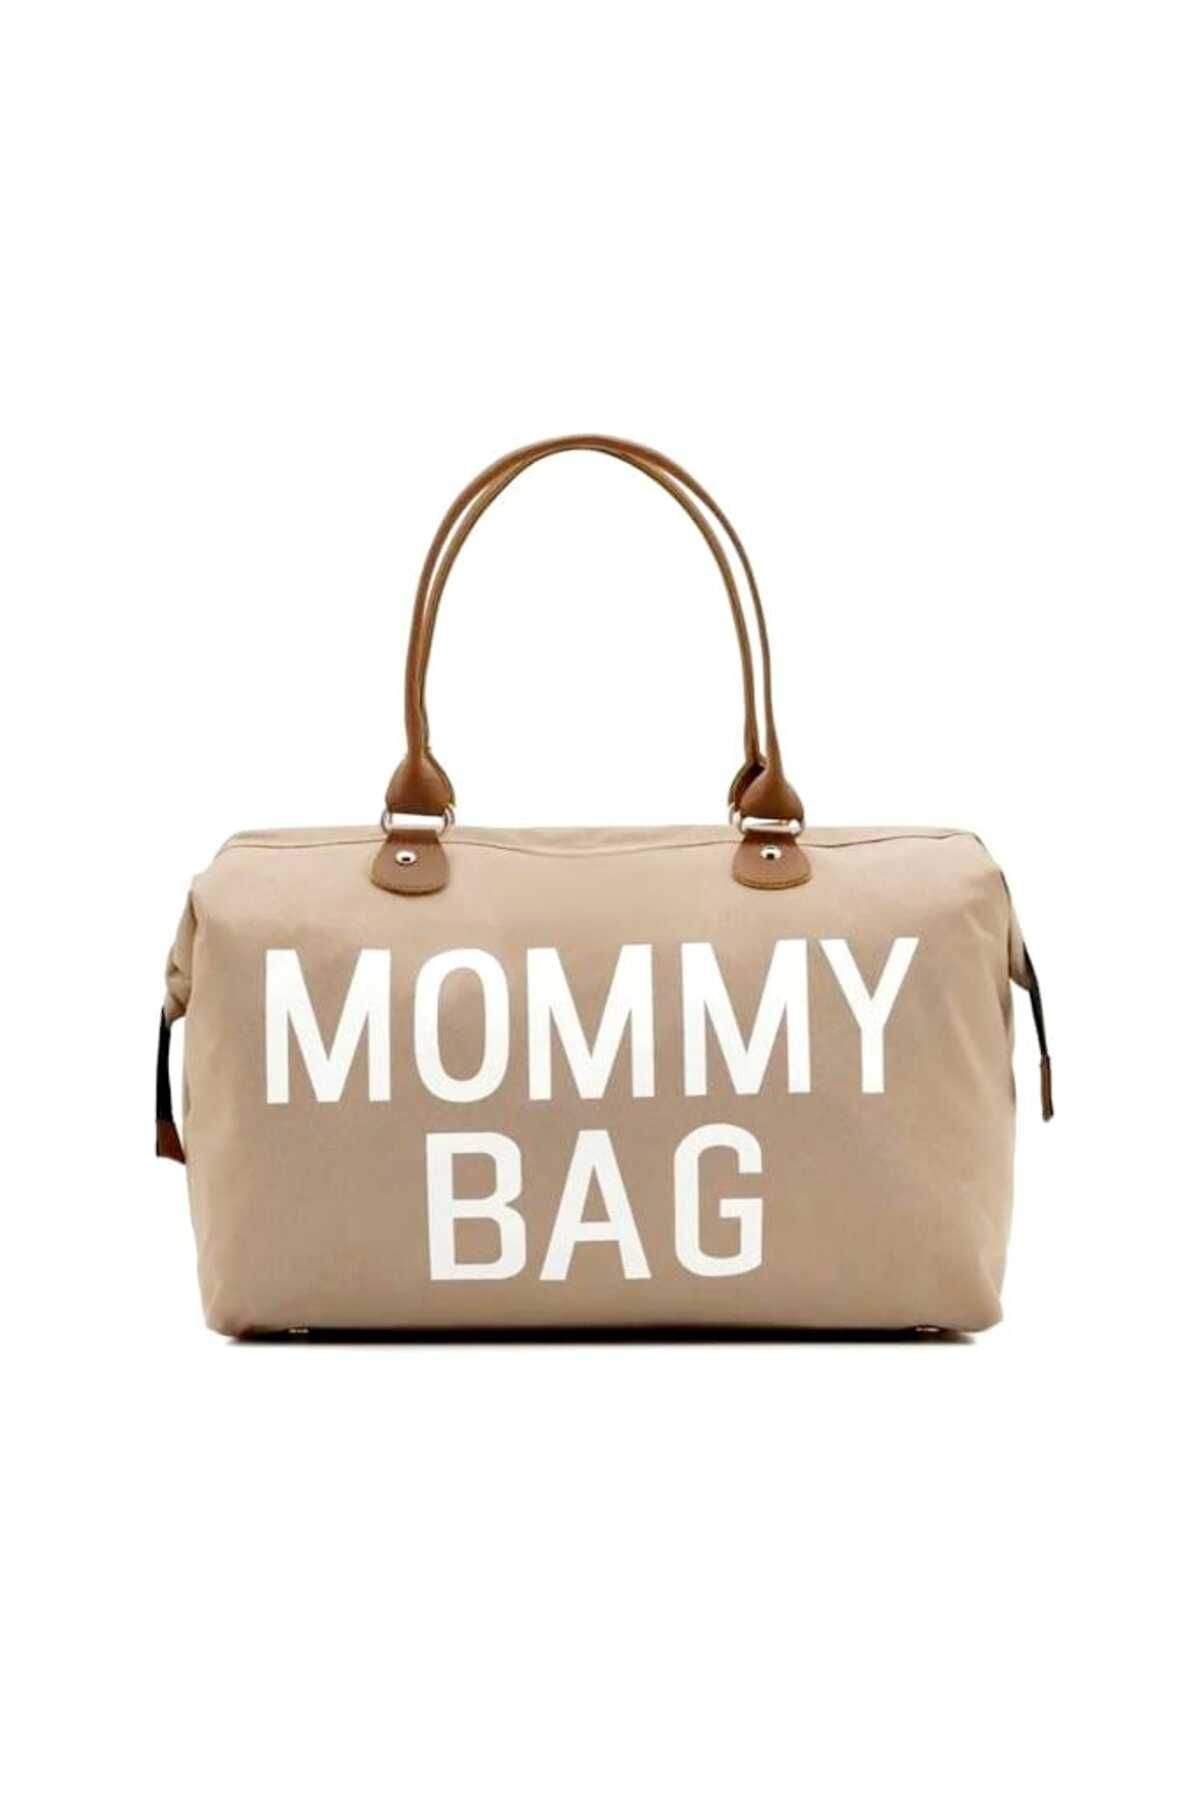 Lui Baby Mommy Bag Mommy Bag Anne Bebek Bakım Çantası Termal Biberonlu